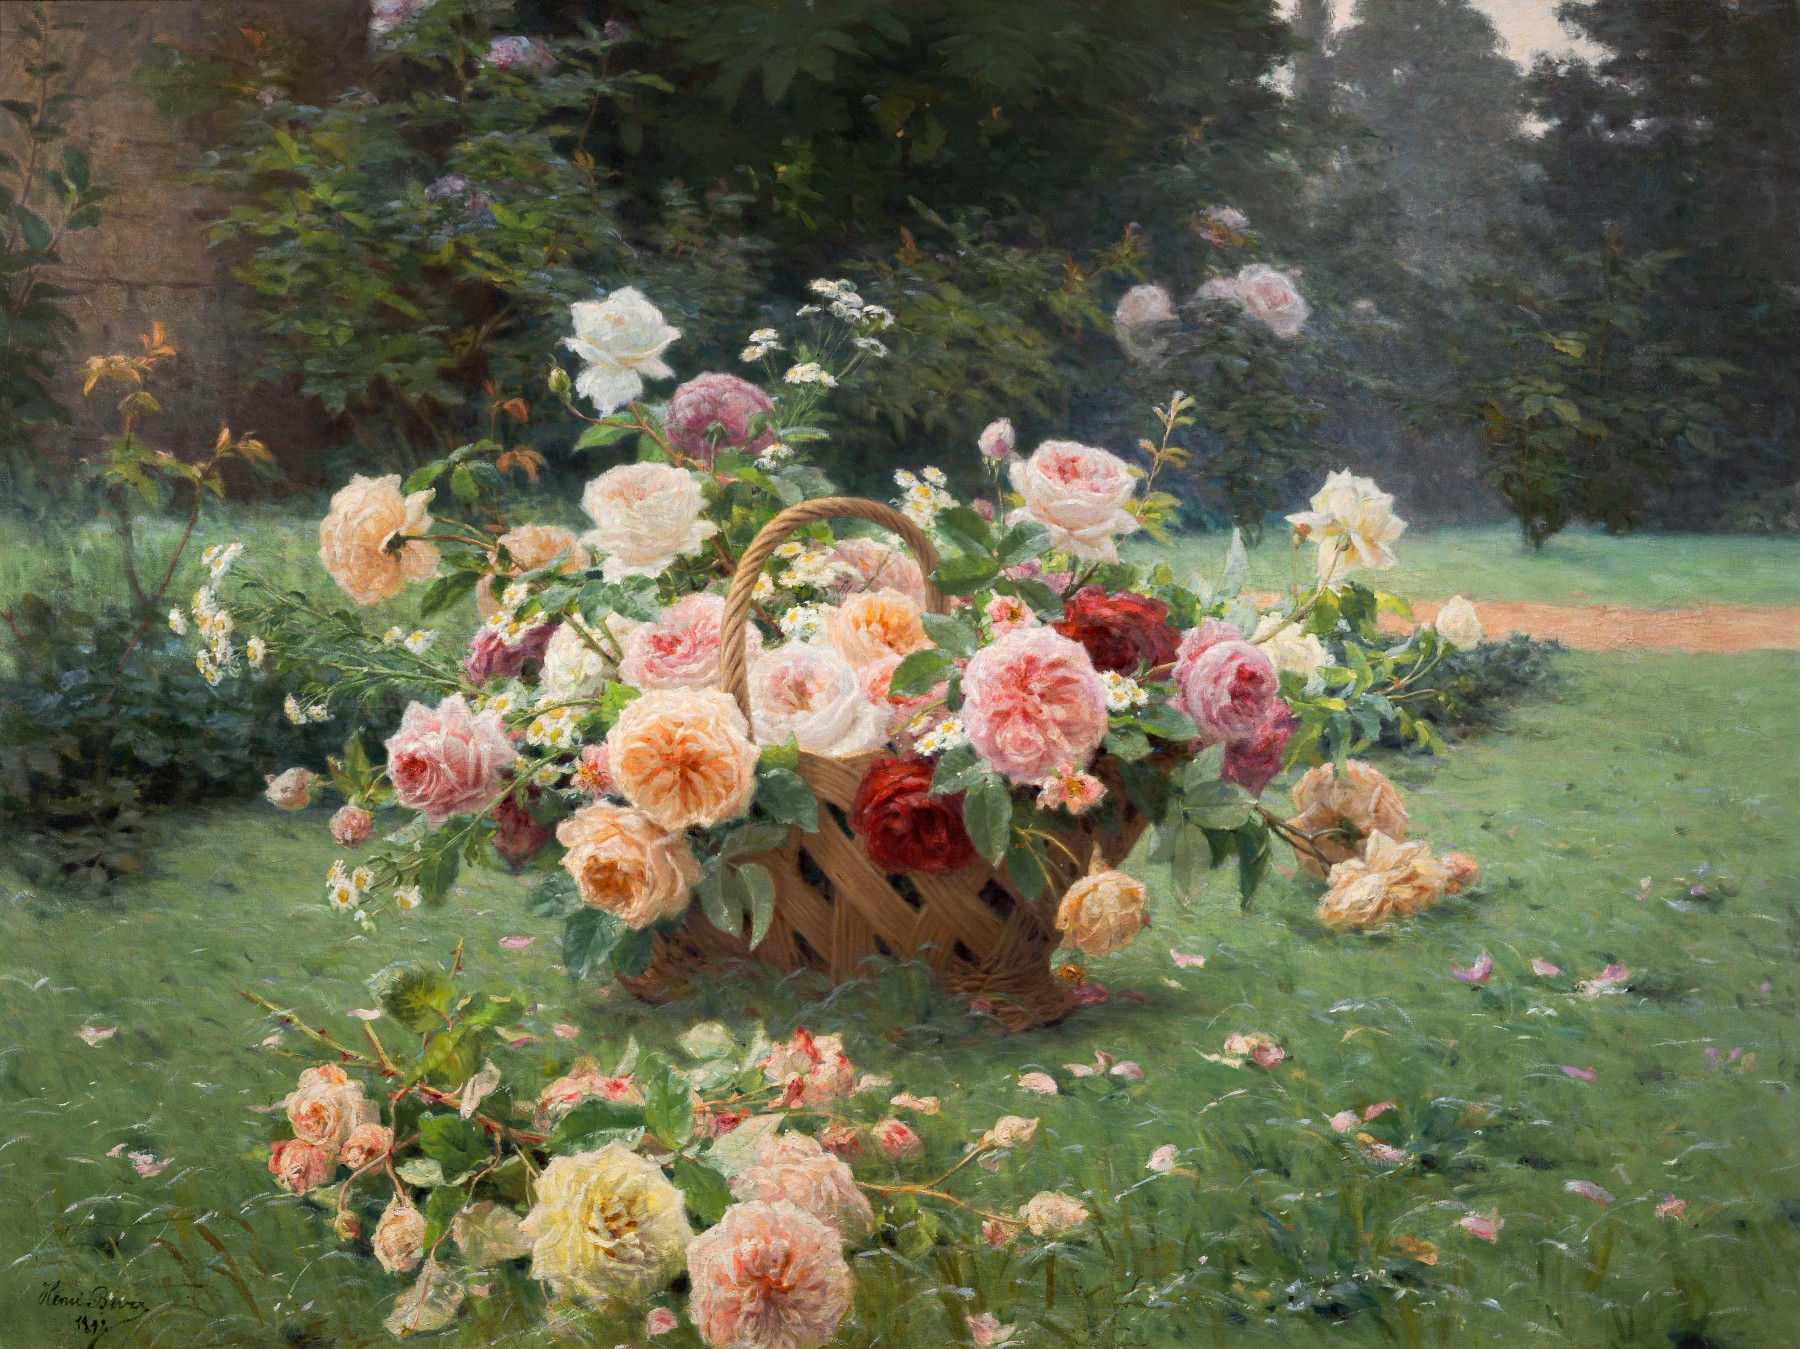 Le panier de roses by Henri Biva - 1891 - 160 x 120 cm collection privée